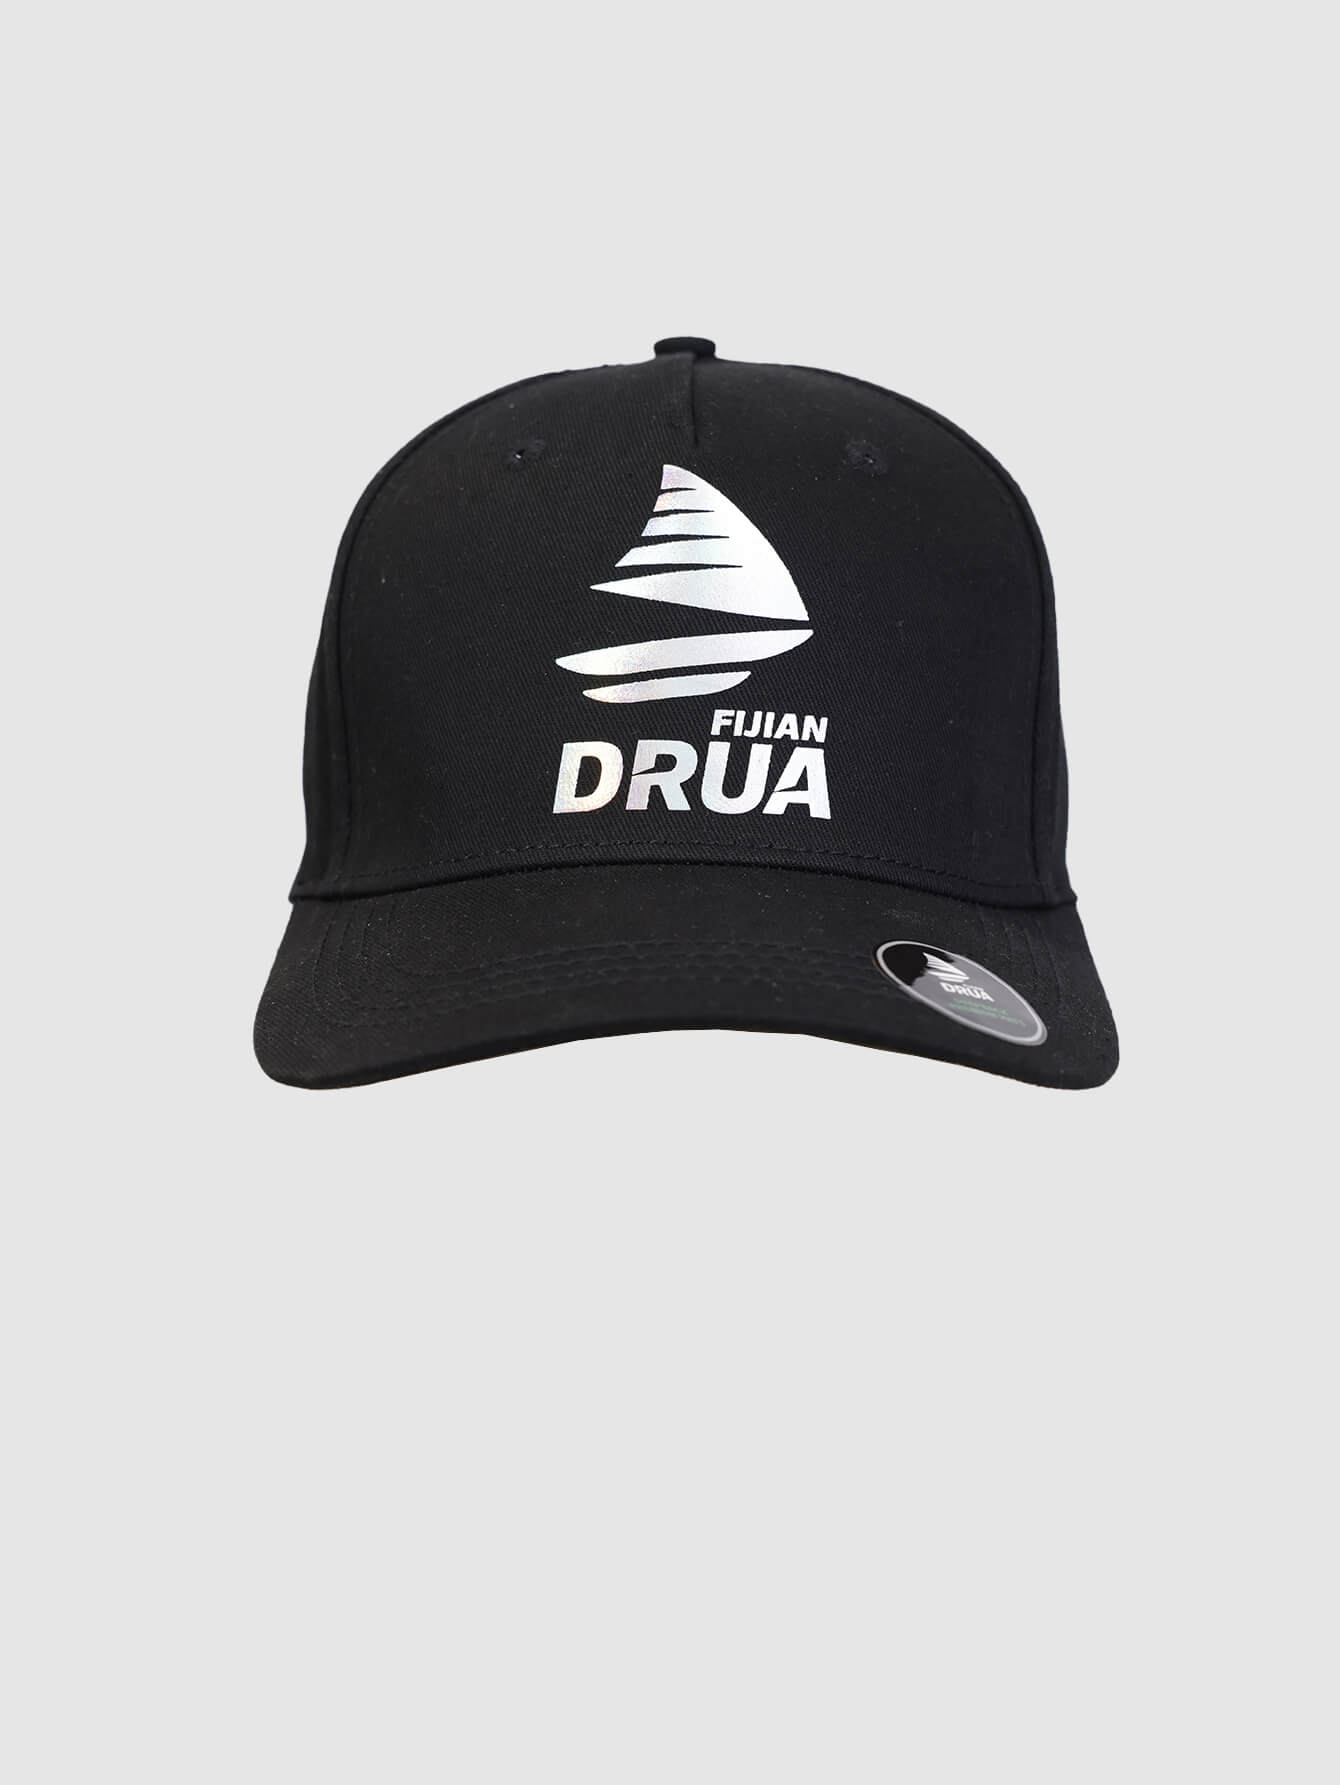 Fijian Drua Snapback Cap | Fijian Drua Rugby Shop